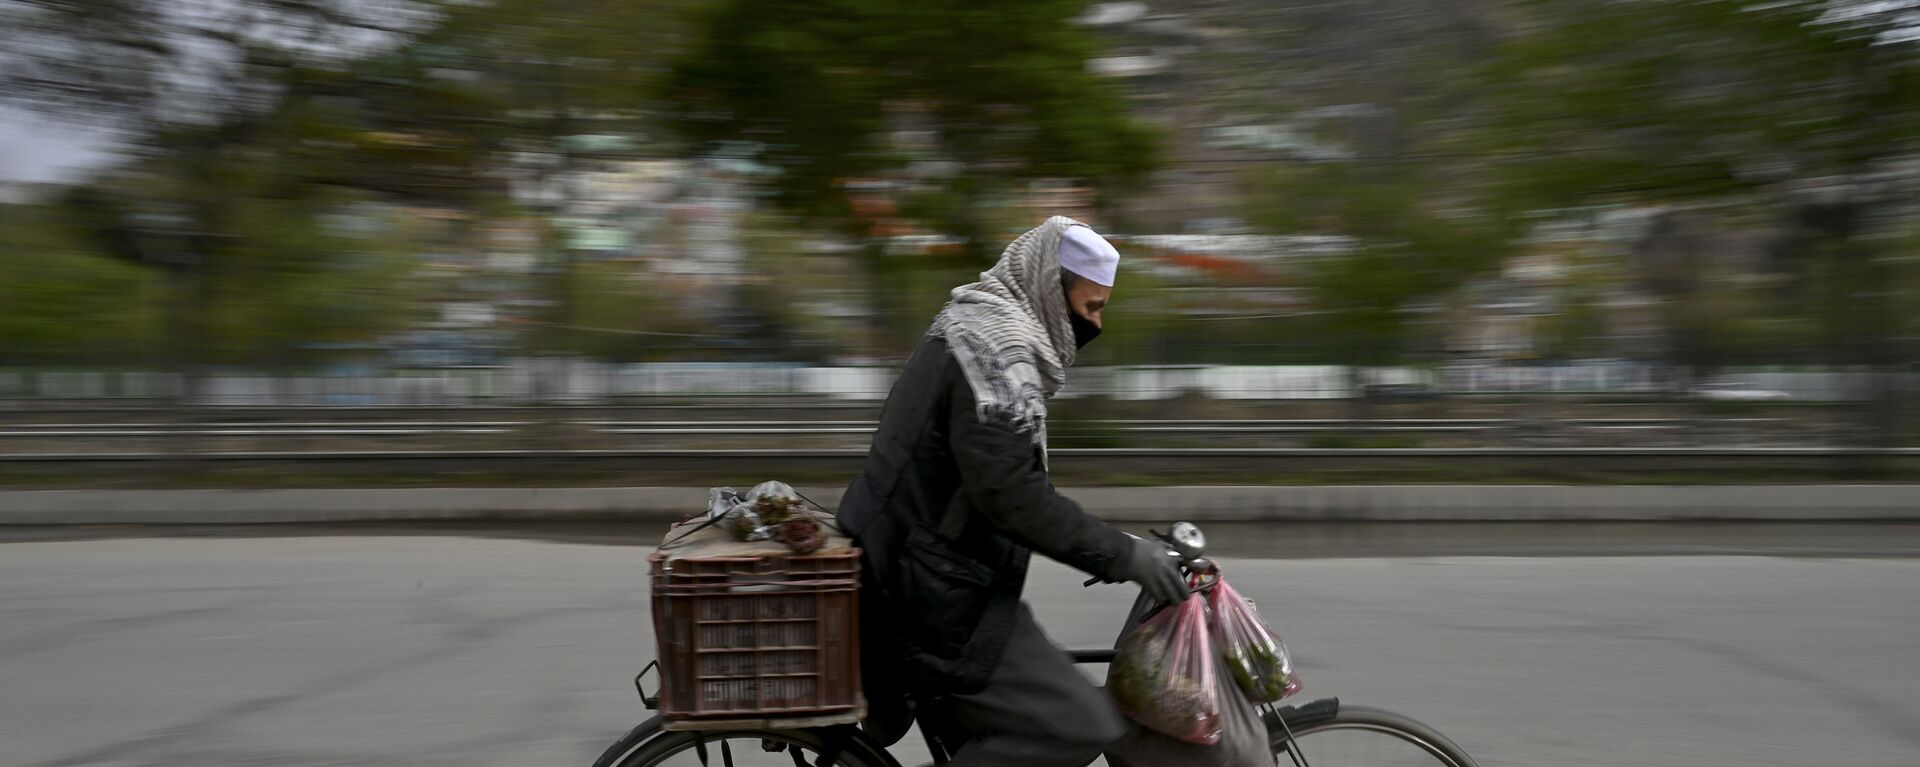 Мужчина в защитной маске едет на велосипеде по Кабулу, Афганистан - Sputnik Тоҷикистон, 1920, 04.11.2021